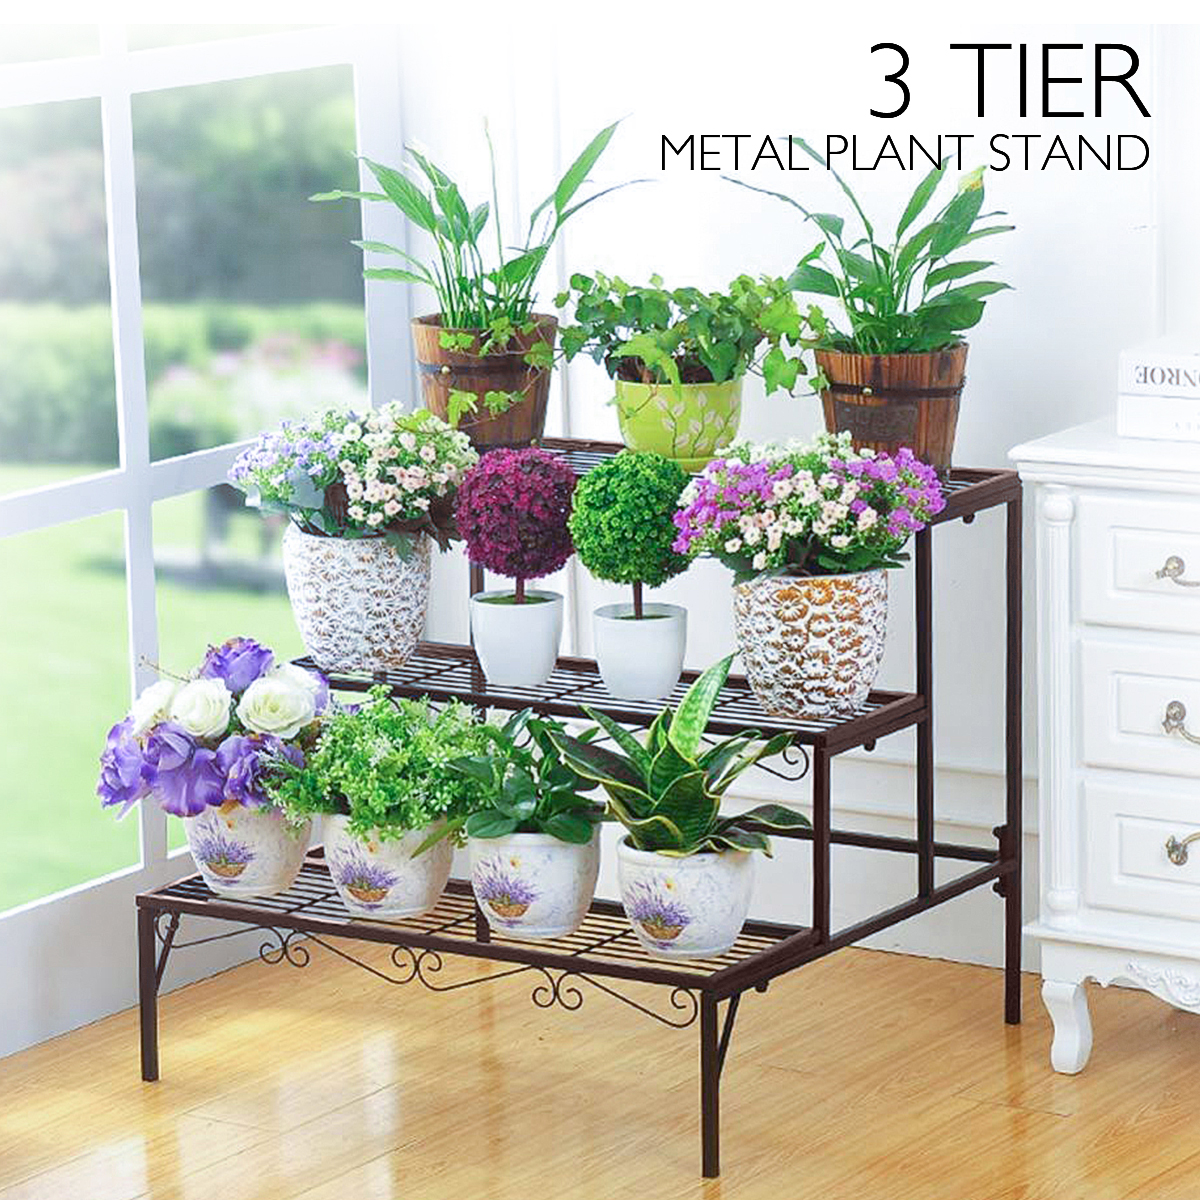 3 Tier Metal Plant Stand Flower Pot Holder Shelves Garden Home Indoor Outdoor 3